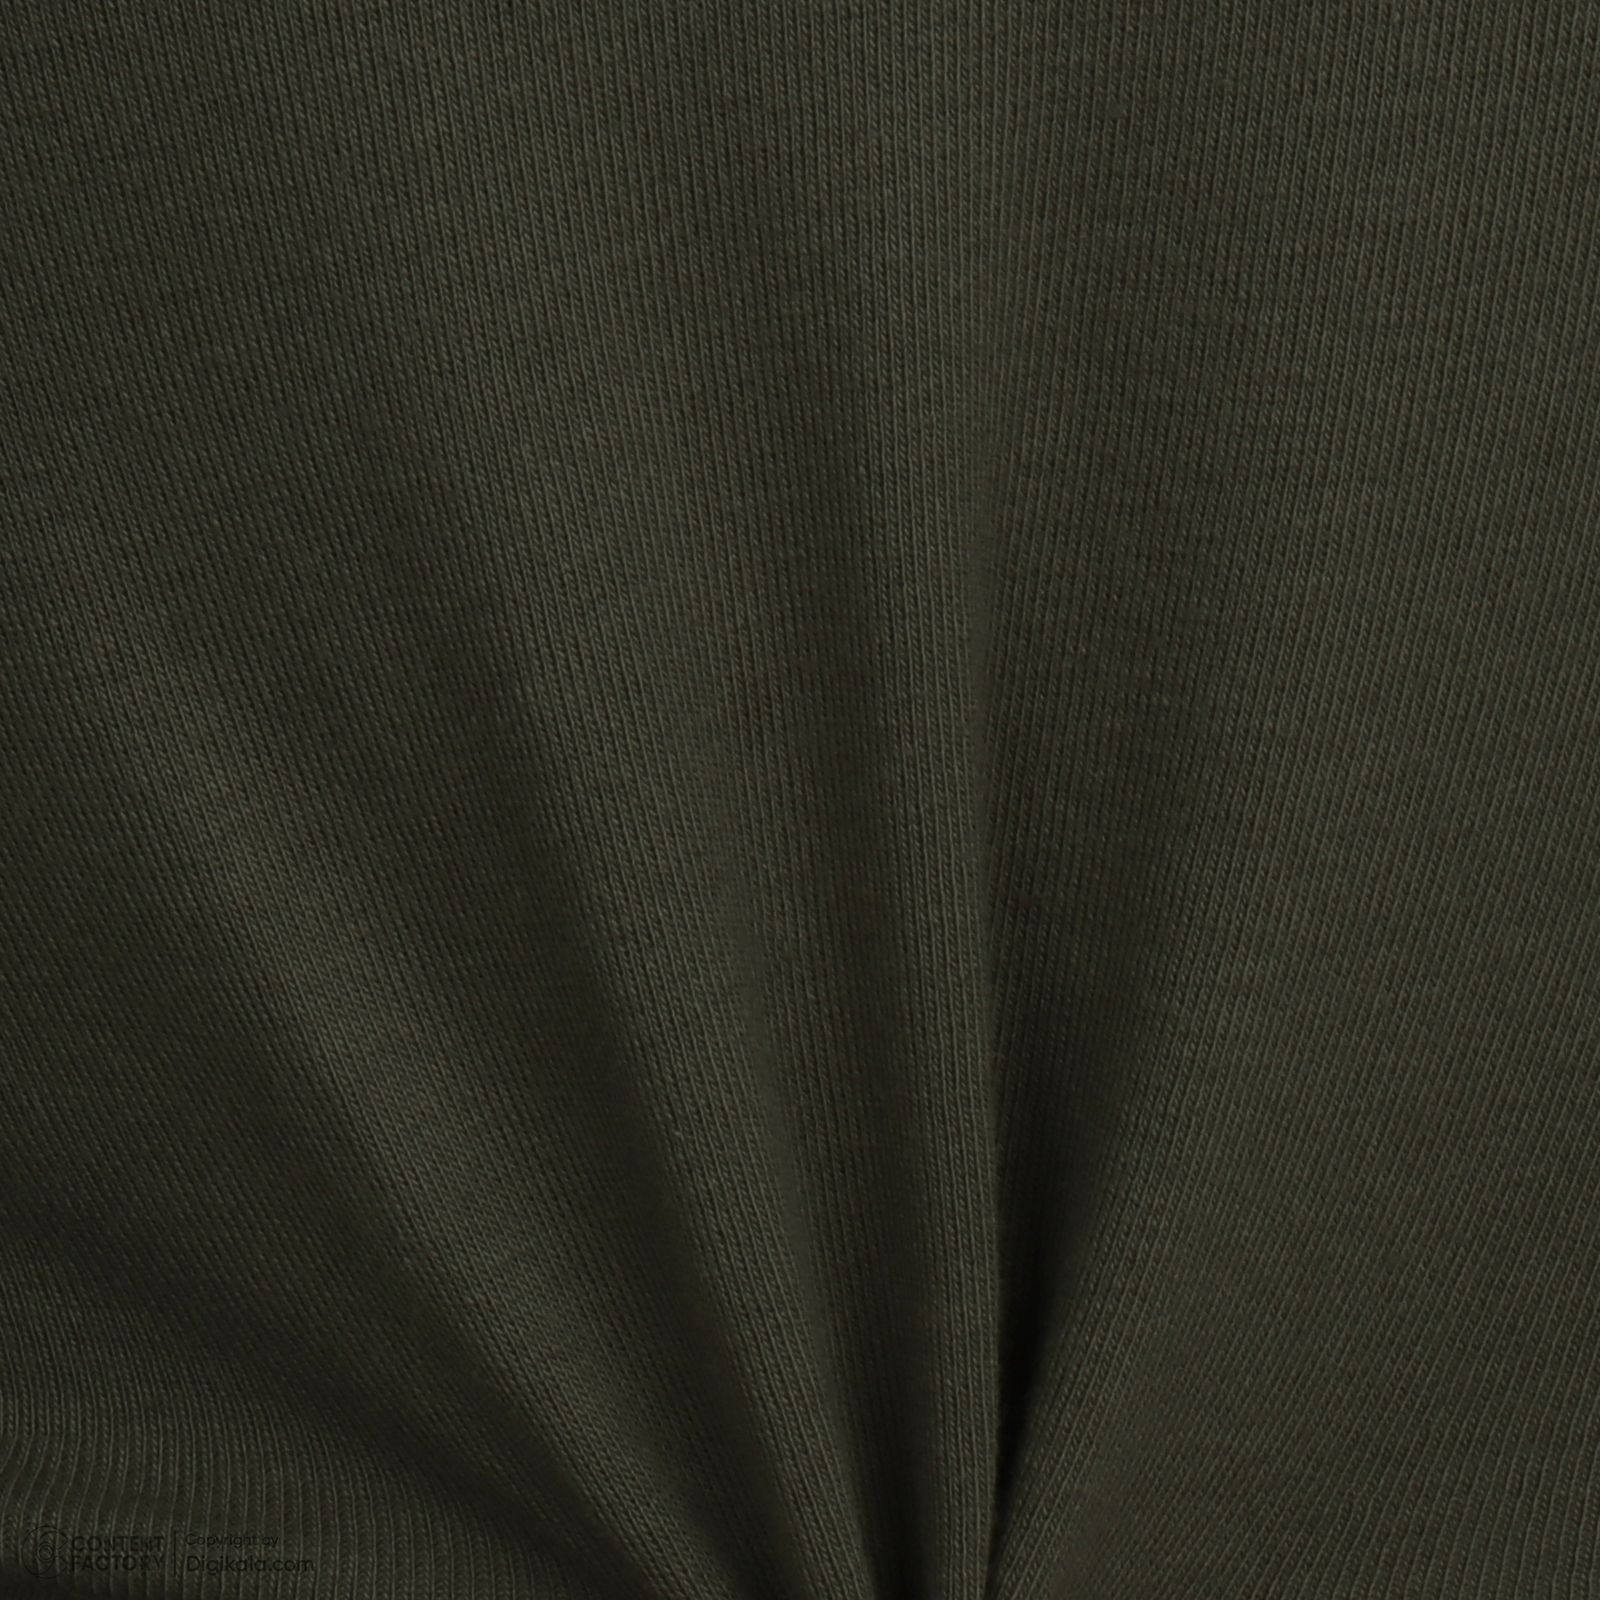 تی شرت آستین کوتاه زنانه پاتن جامه مدل فیانگو 131631020123335 رنگ سبز تیره -  - 5